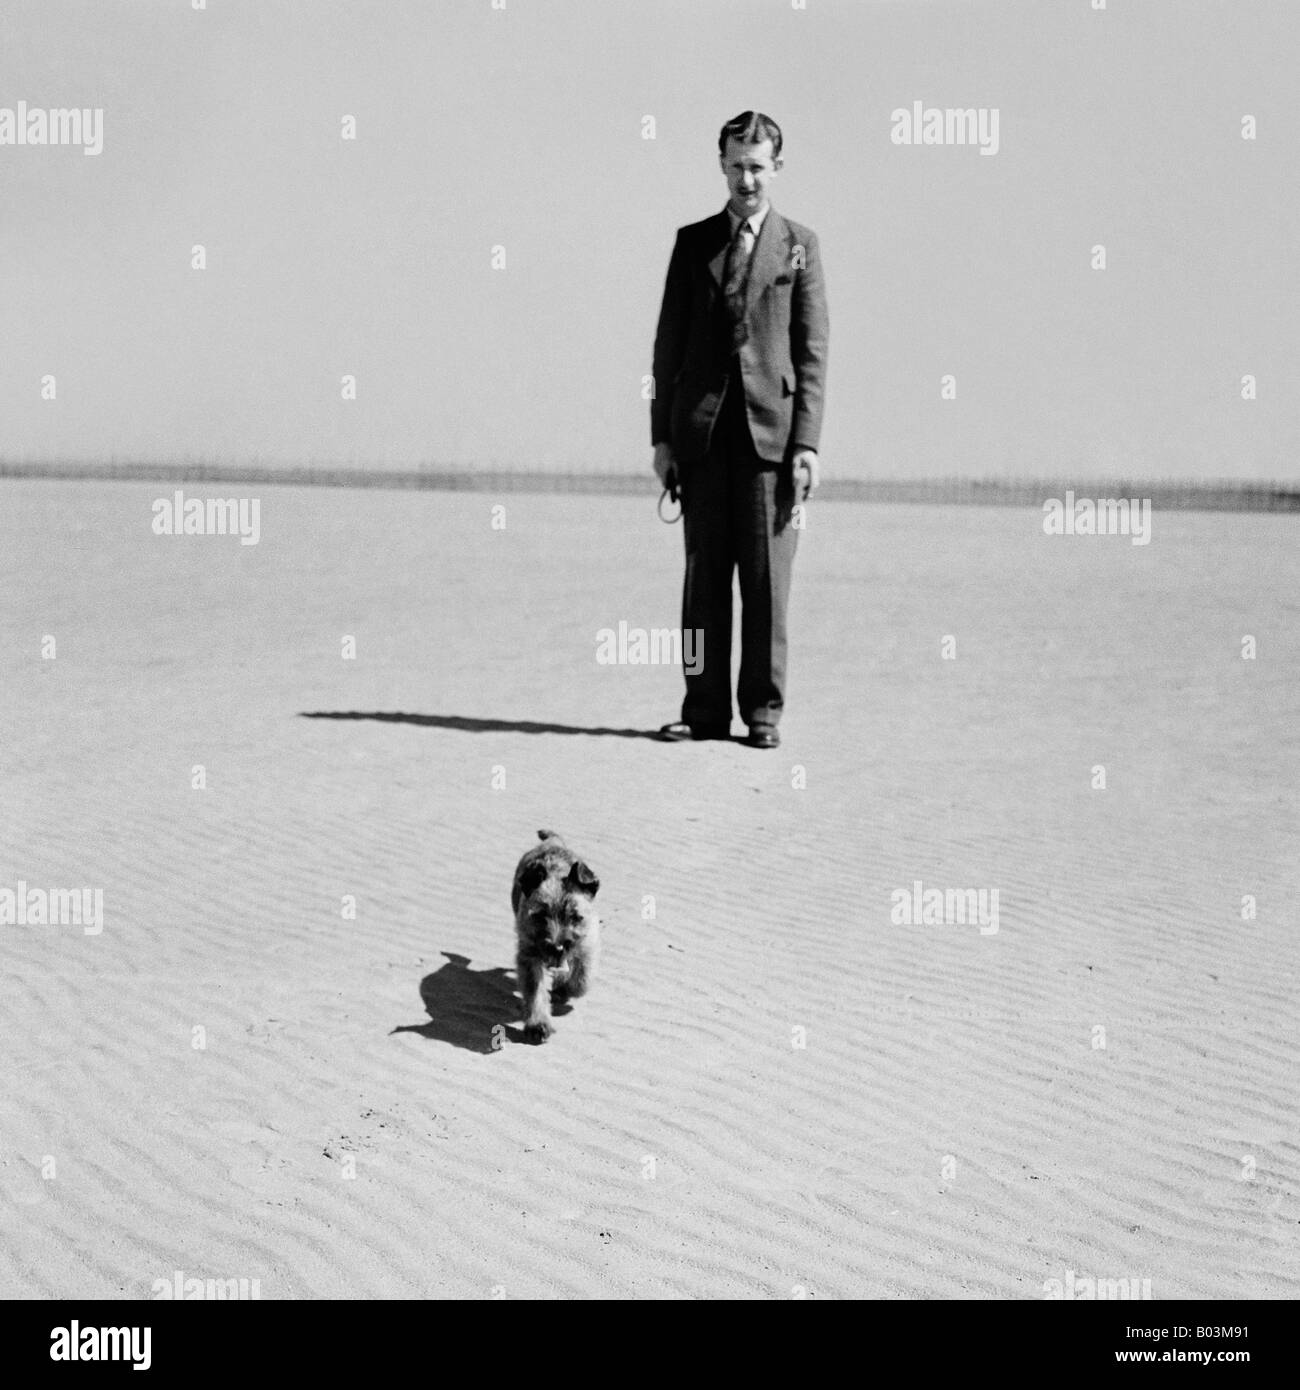 OLD VINTAGE PHOTO INSTANTANÉ DE LA FAMILLE DE L'HOMME AVEC UN PETIT TERRIER PUPPY DOG RUNNING ON BEACH Banque D'Images